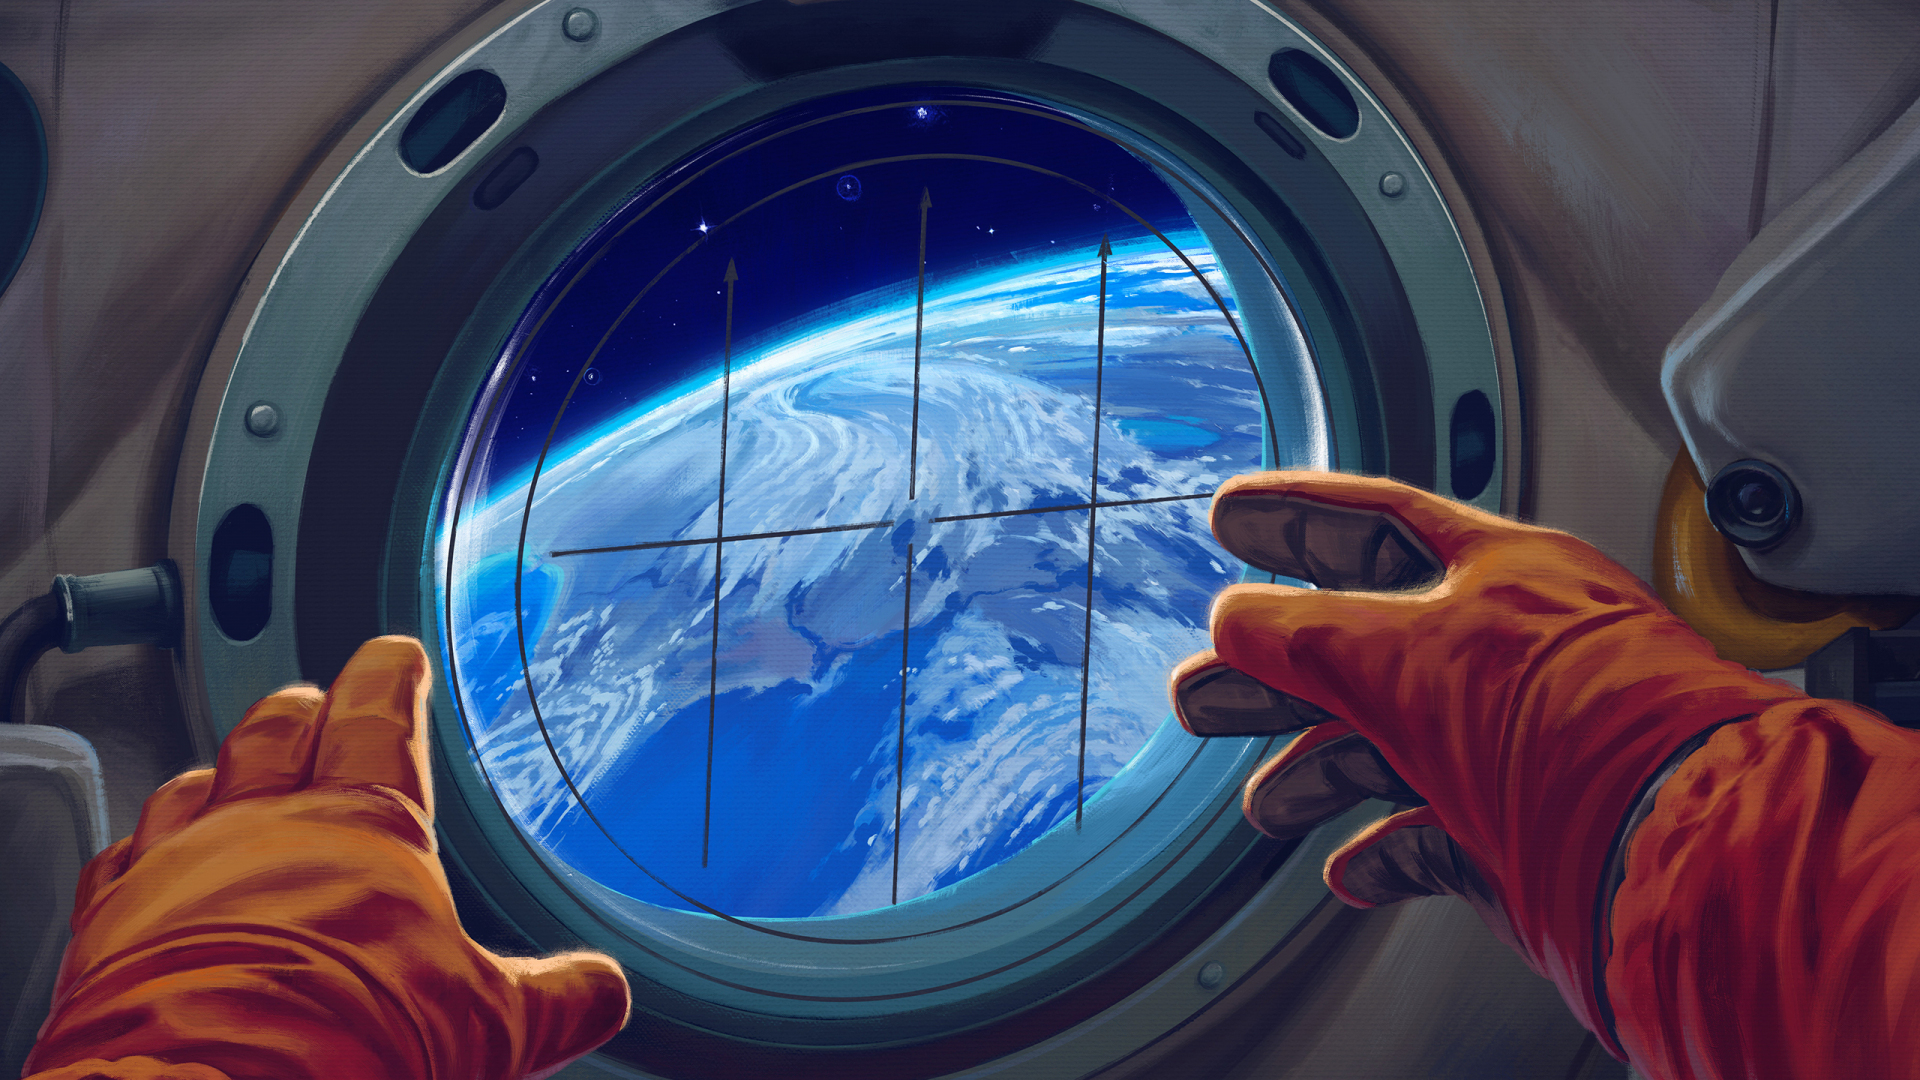 Spacecraft window, astronaut, 1920x1080 wallpaper